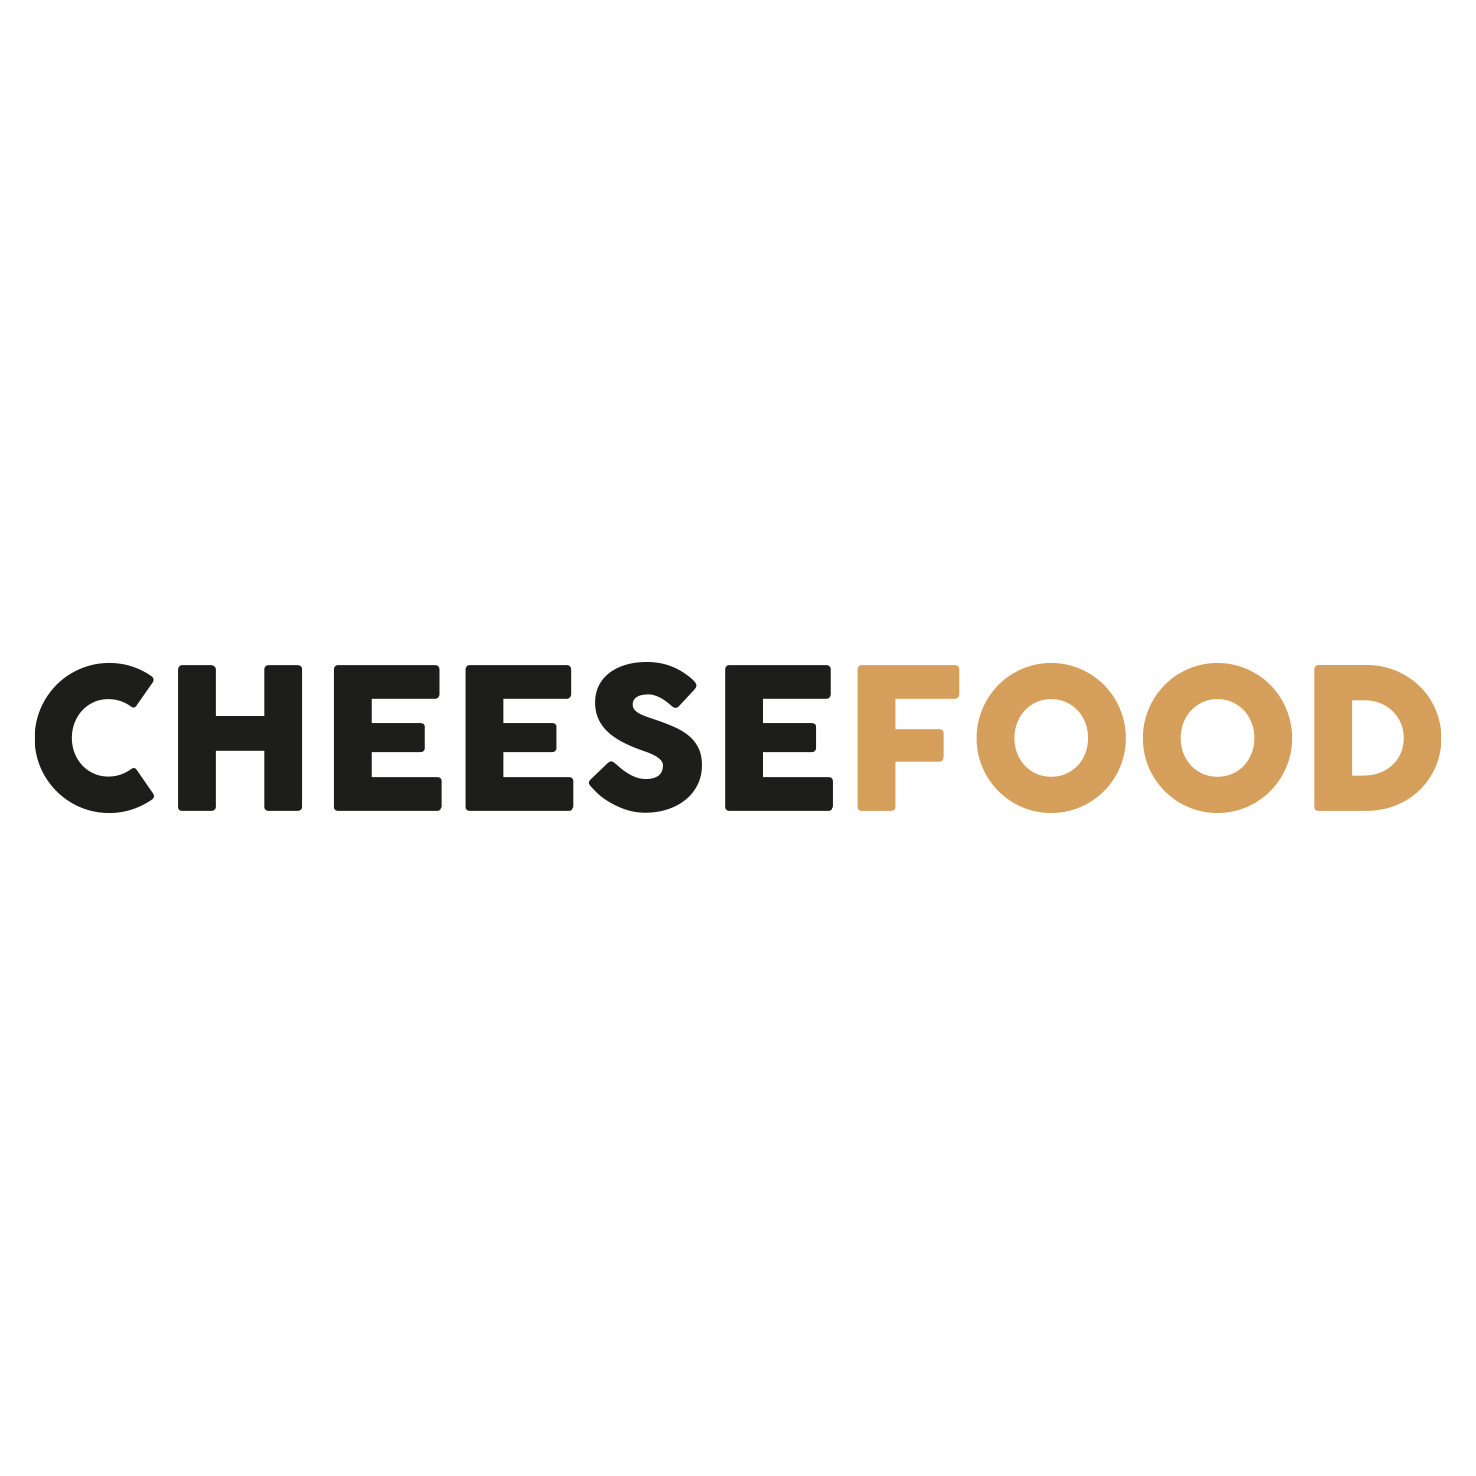 cheesefood.ch - CoTaSo Schweiz GmbH